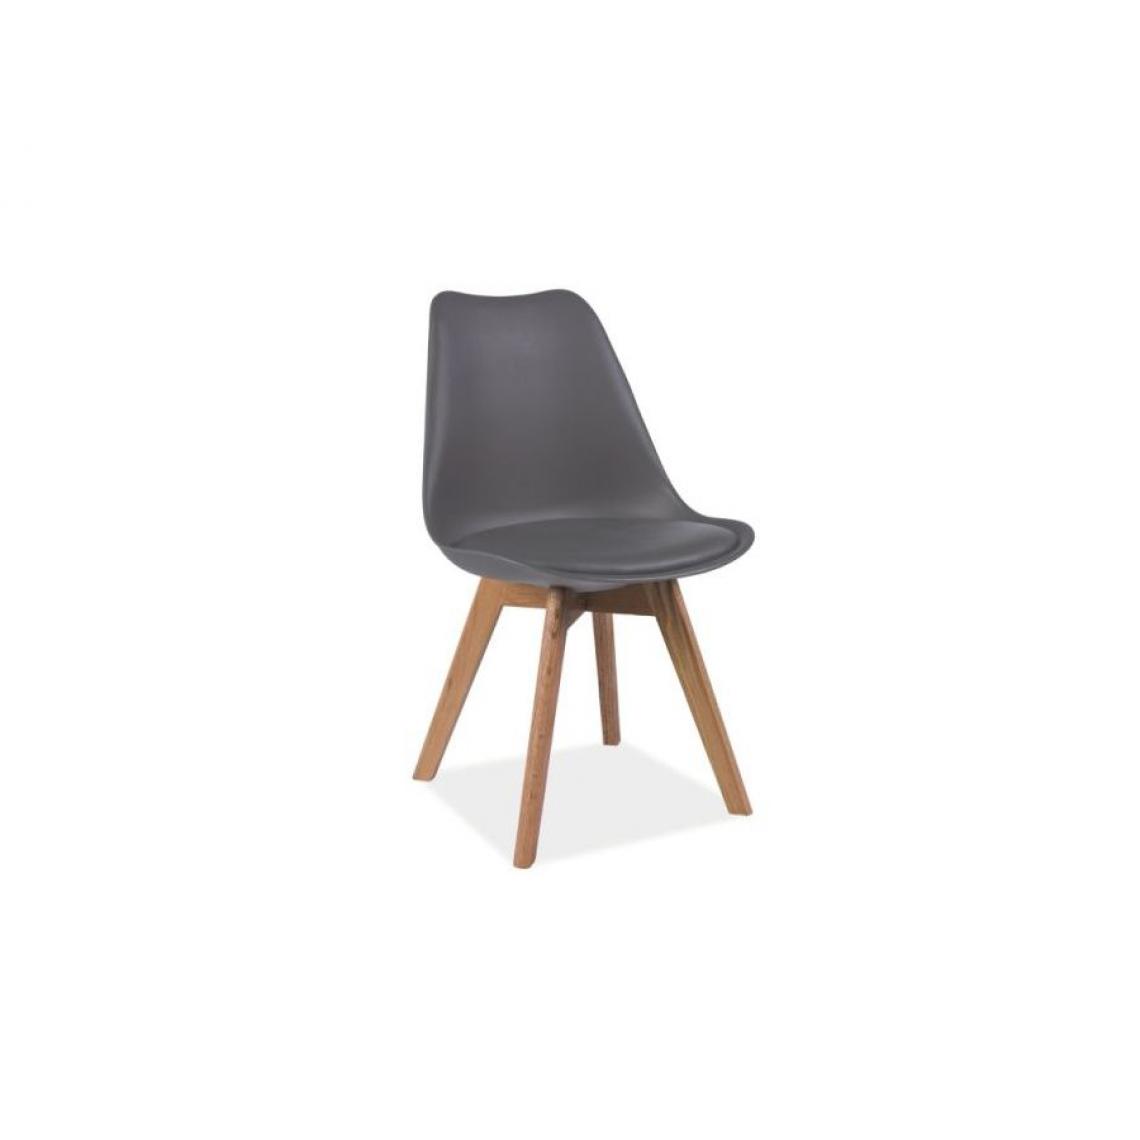 Hucoco - KRIL | Chaise style scandinave salle à manger salon bureau | 83x49x43 cm | PP + similicuir + base bois | Chaise moderne - Gris - Chaises